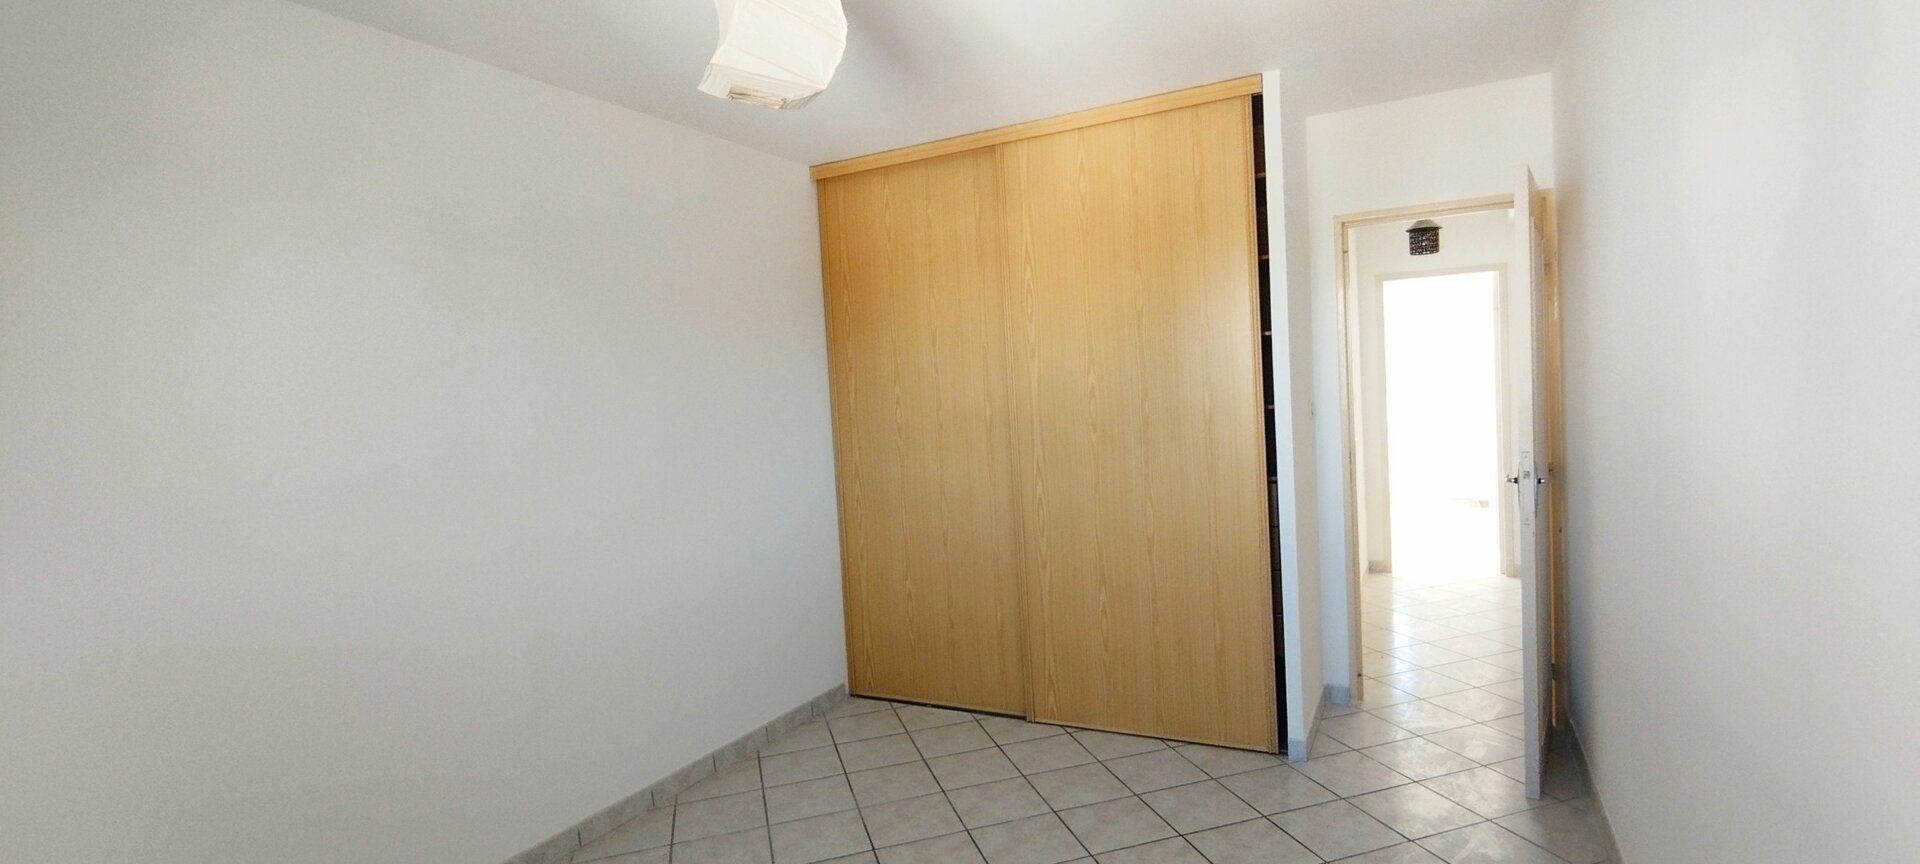 Appartement à vendre 3 82m2 à Toulon vignette-6